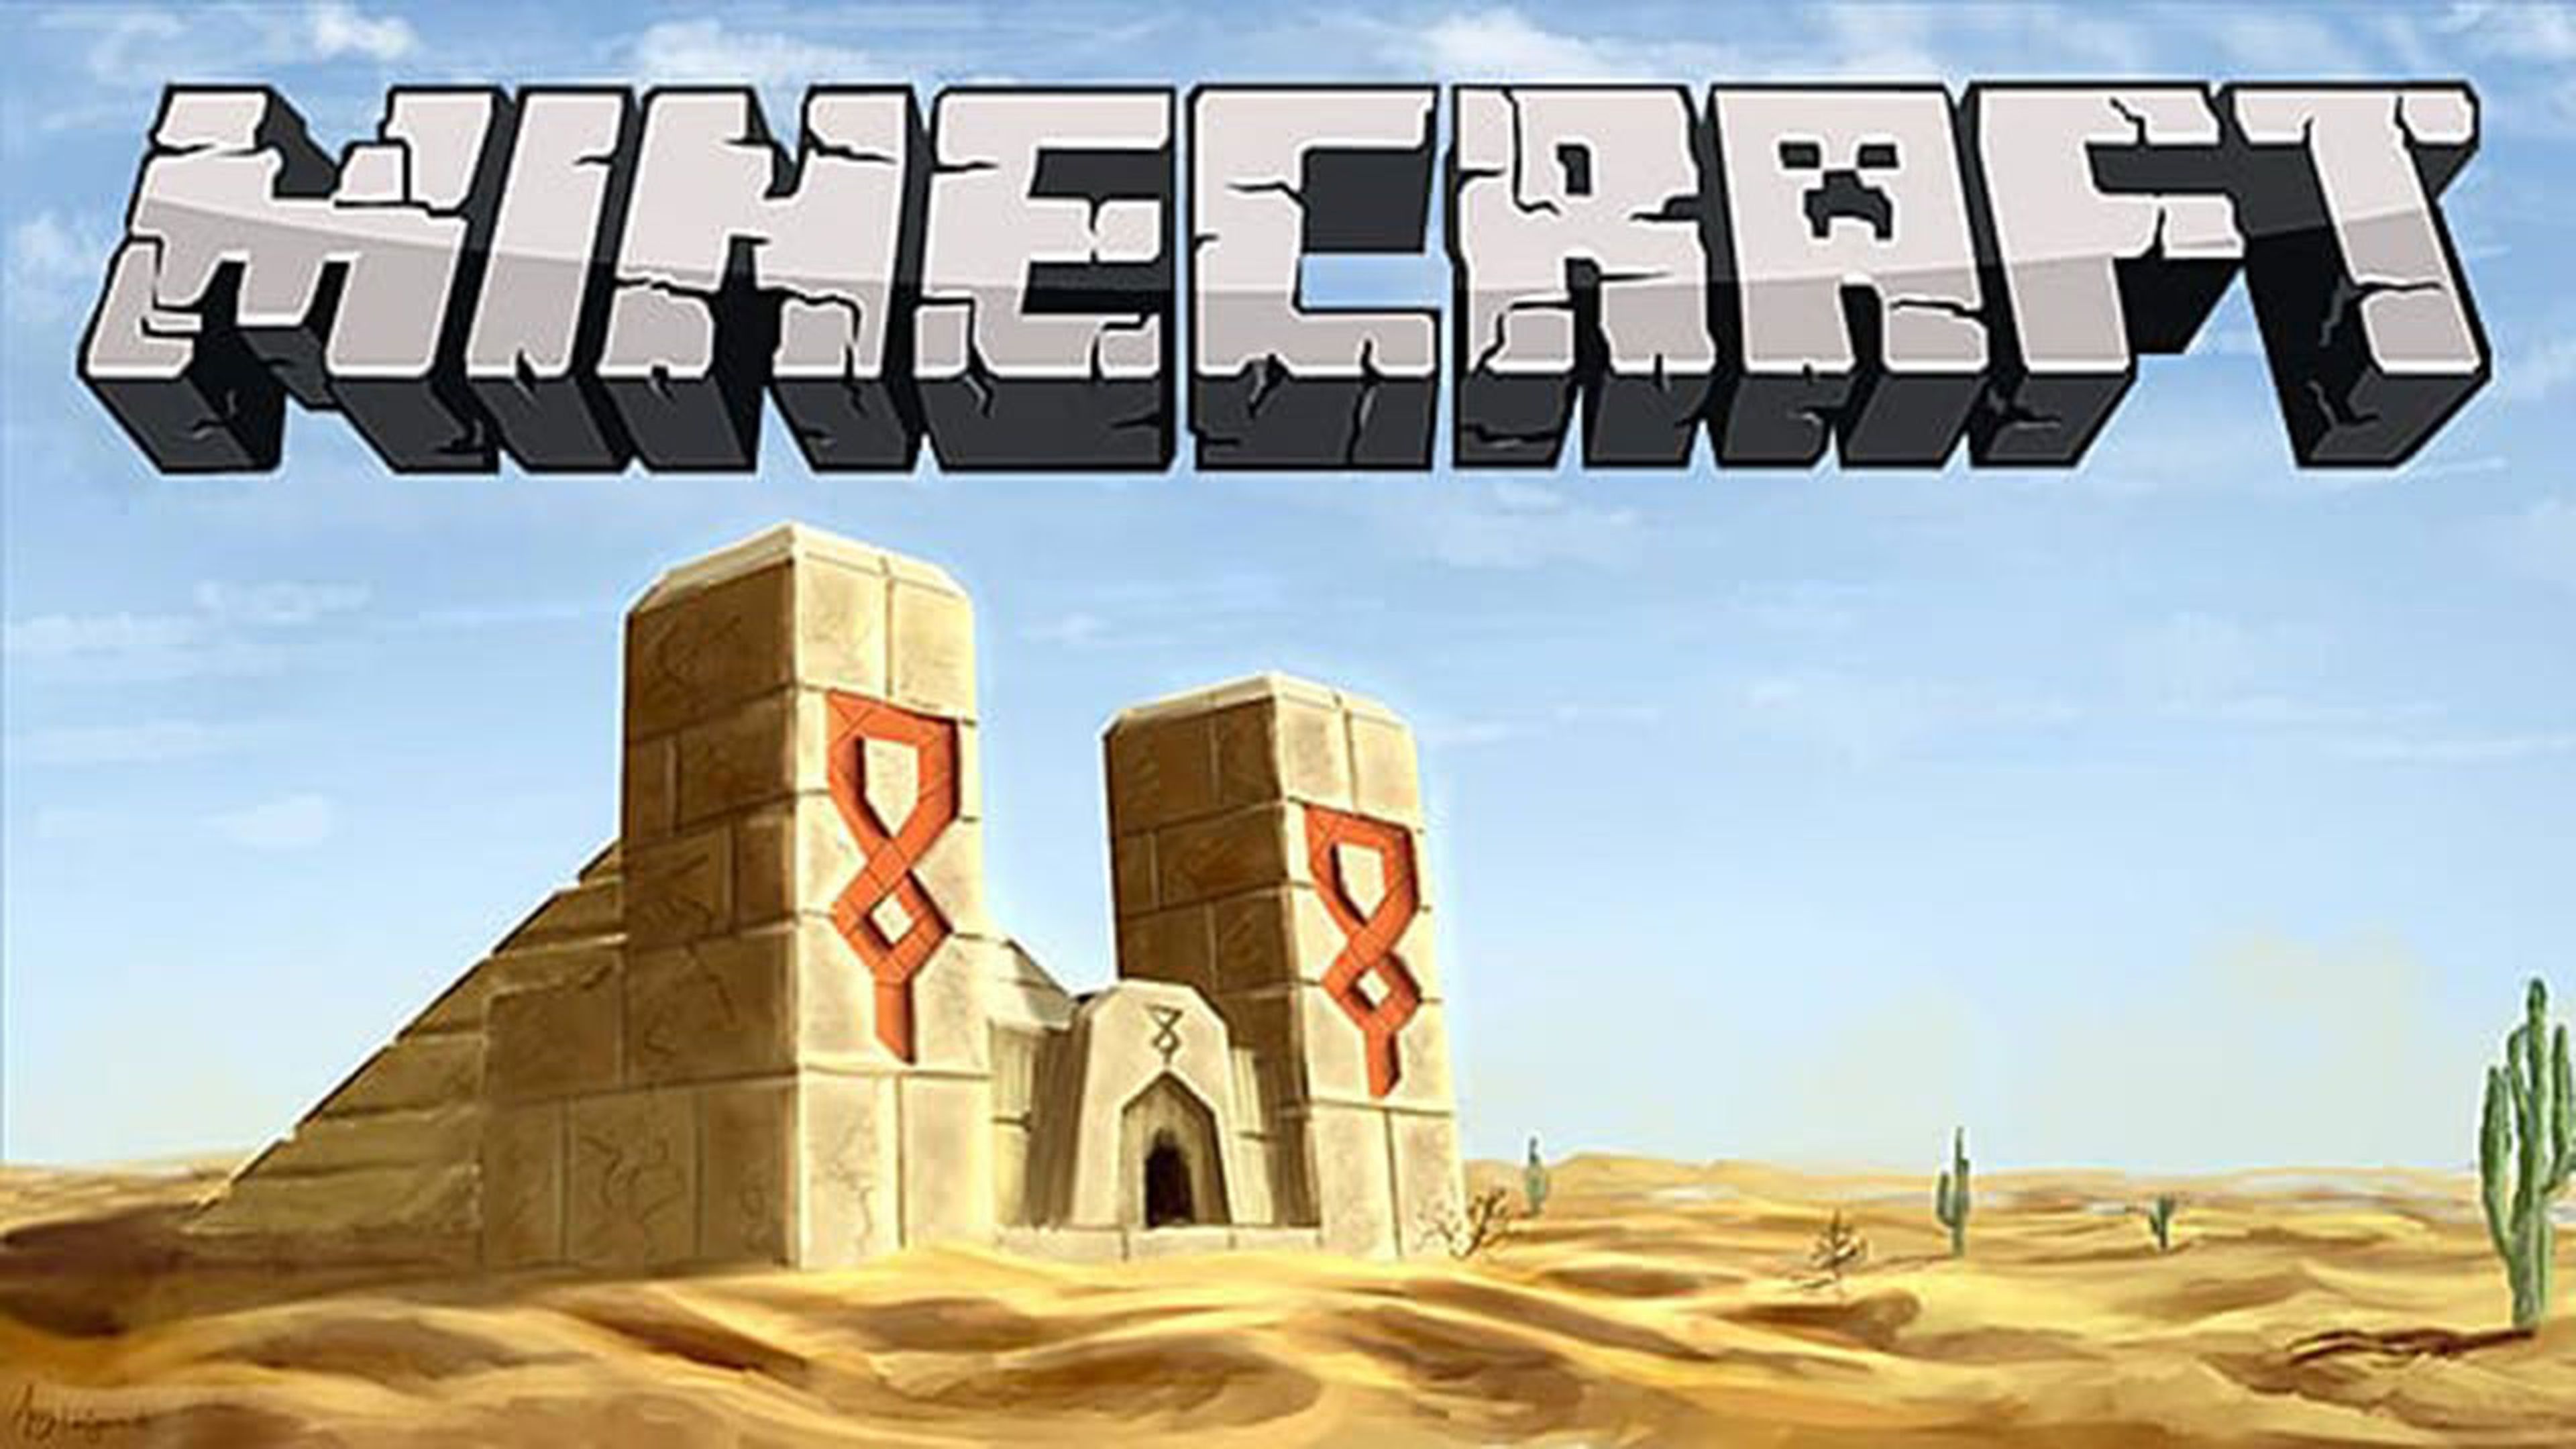 Semillas de desierto Minecraft